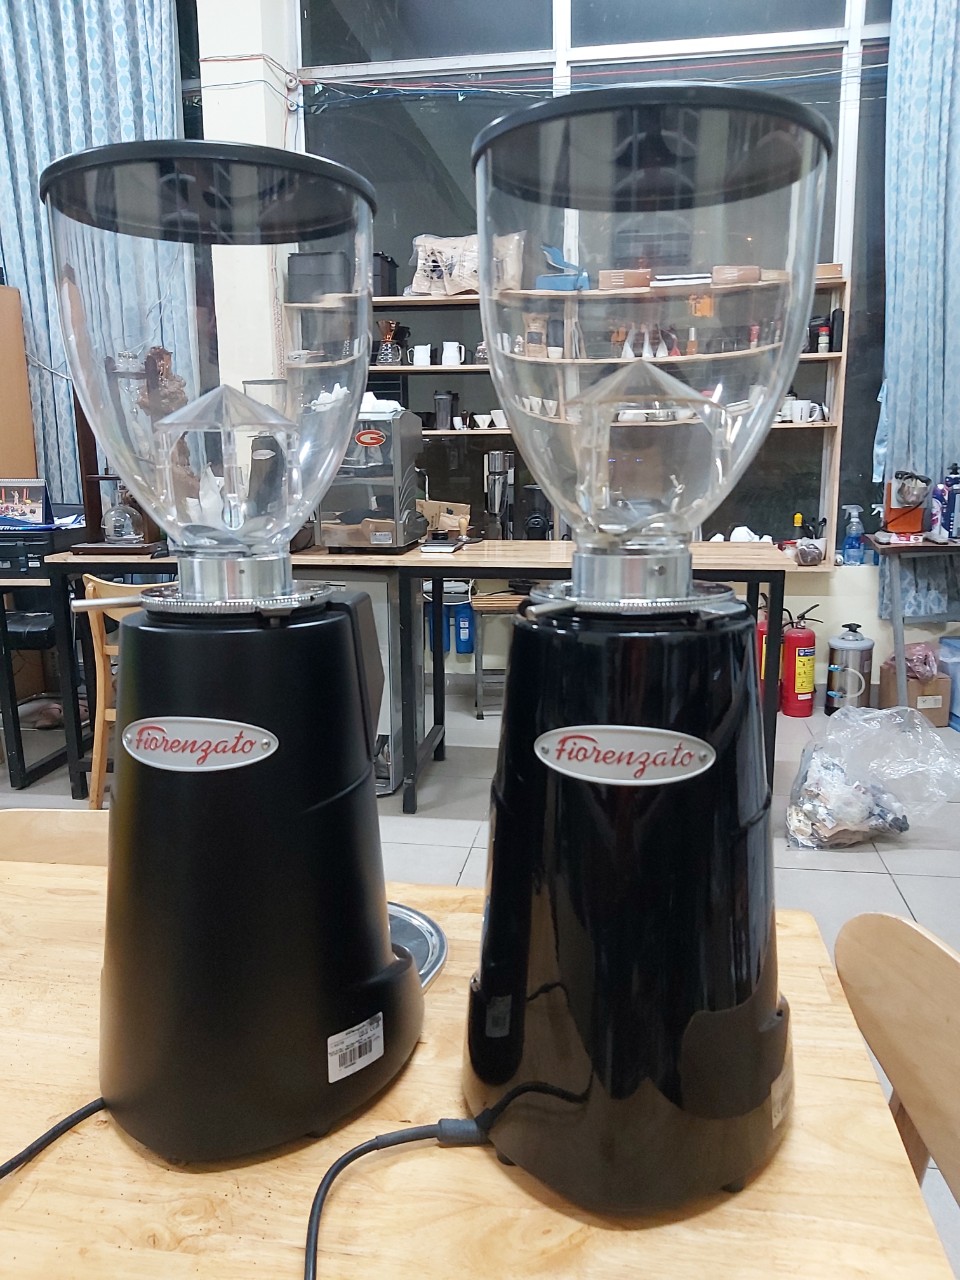 Thanh lý máy xay cà phê chuyên nghiệp Fiorenzato F64E nhập khẩu Ý